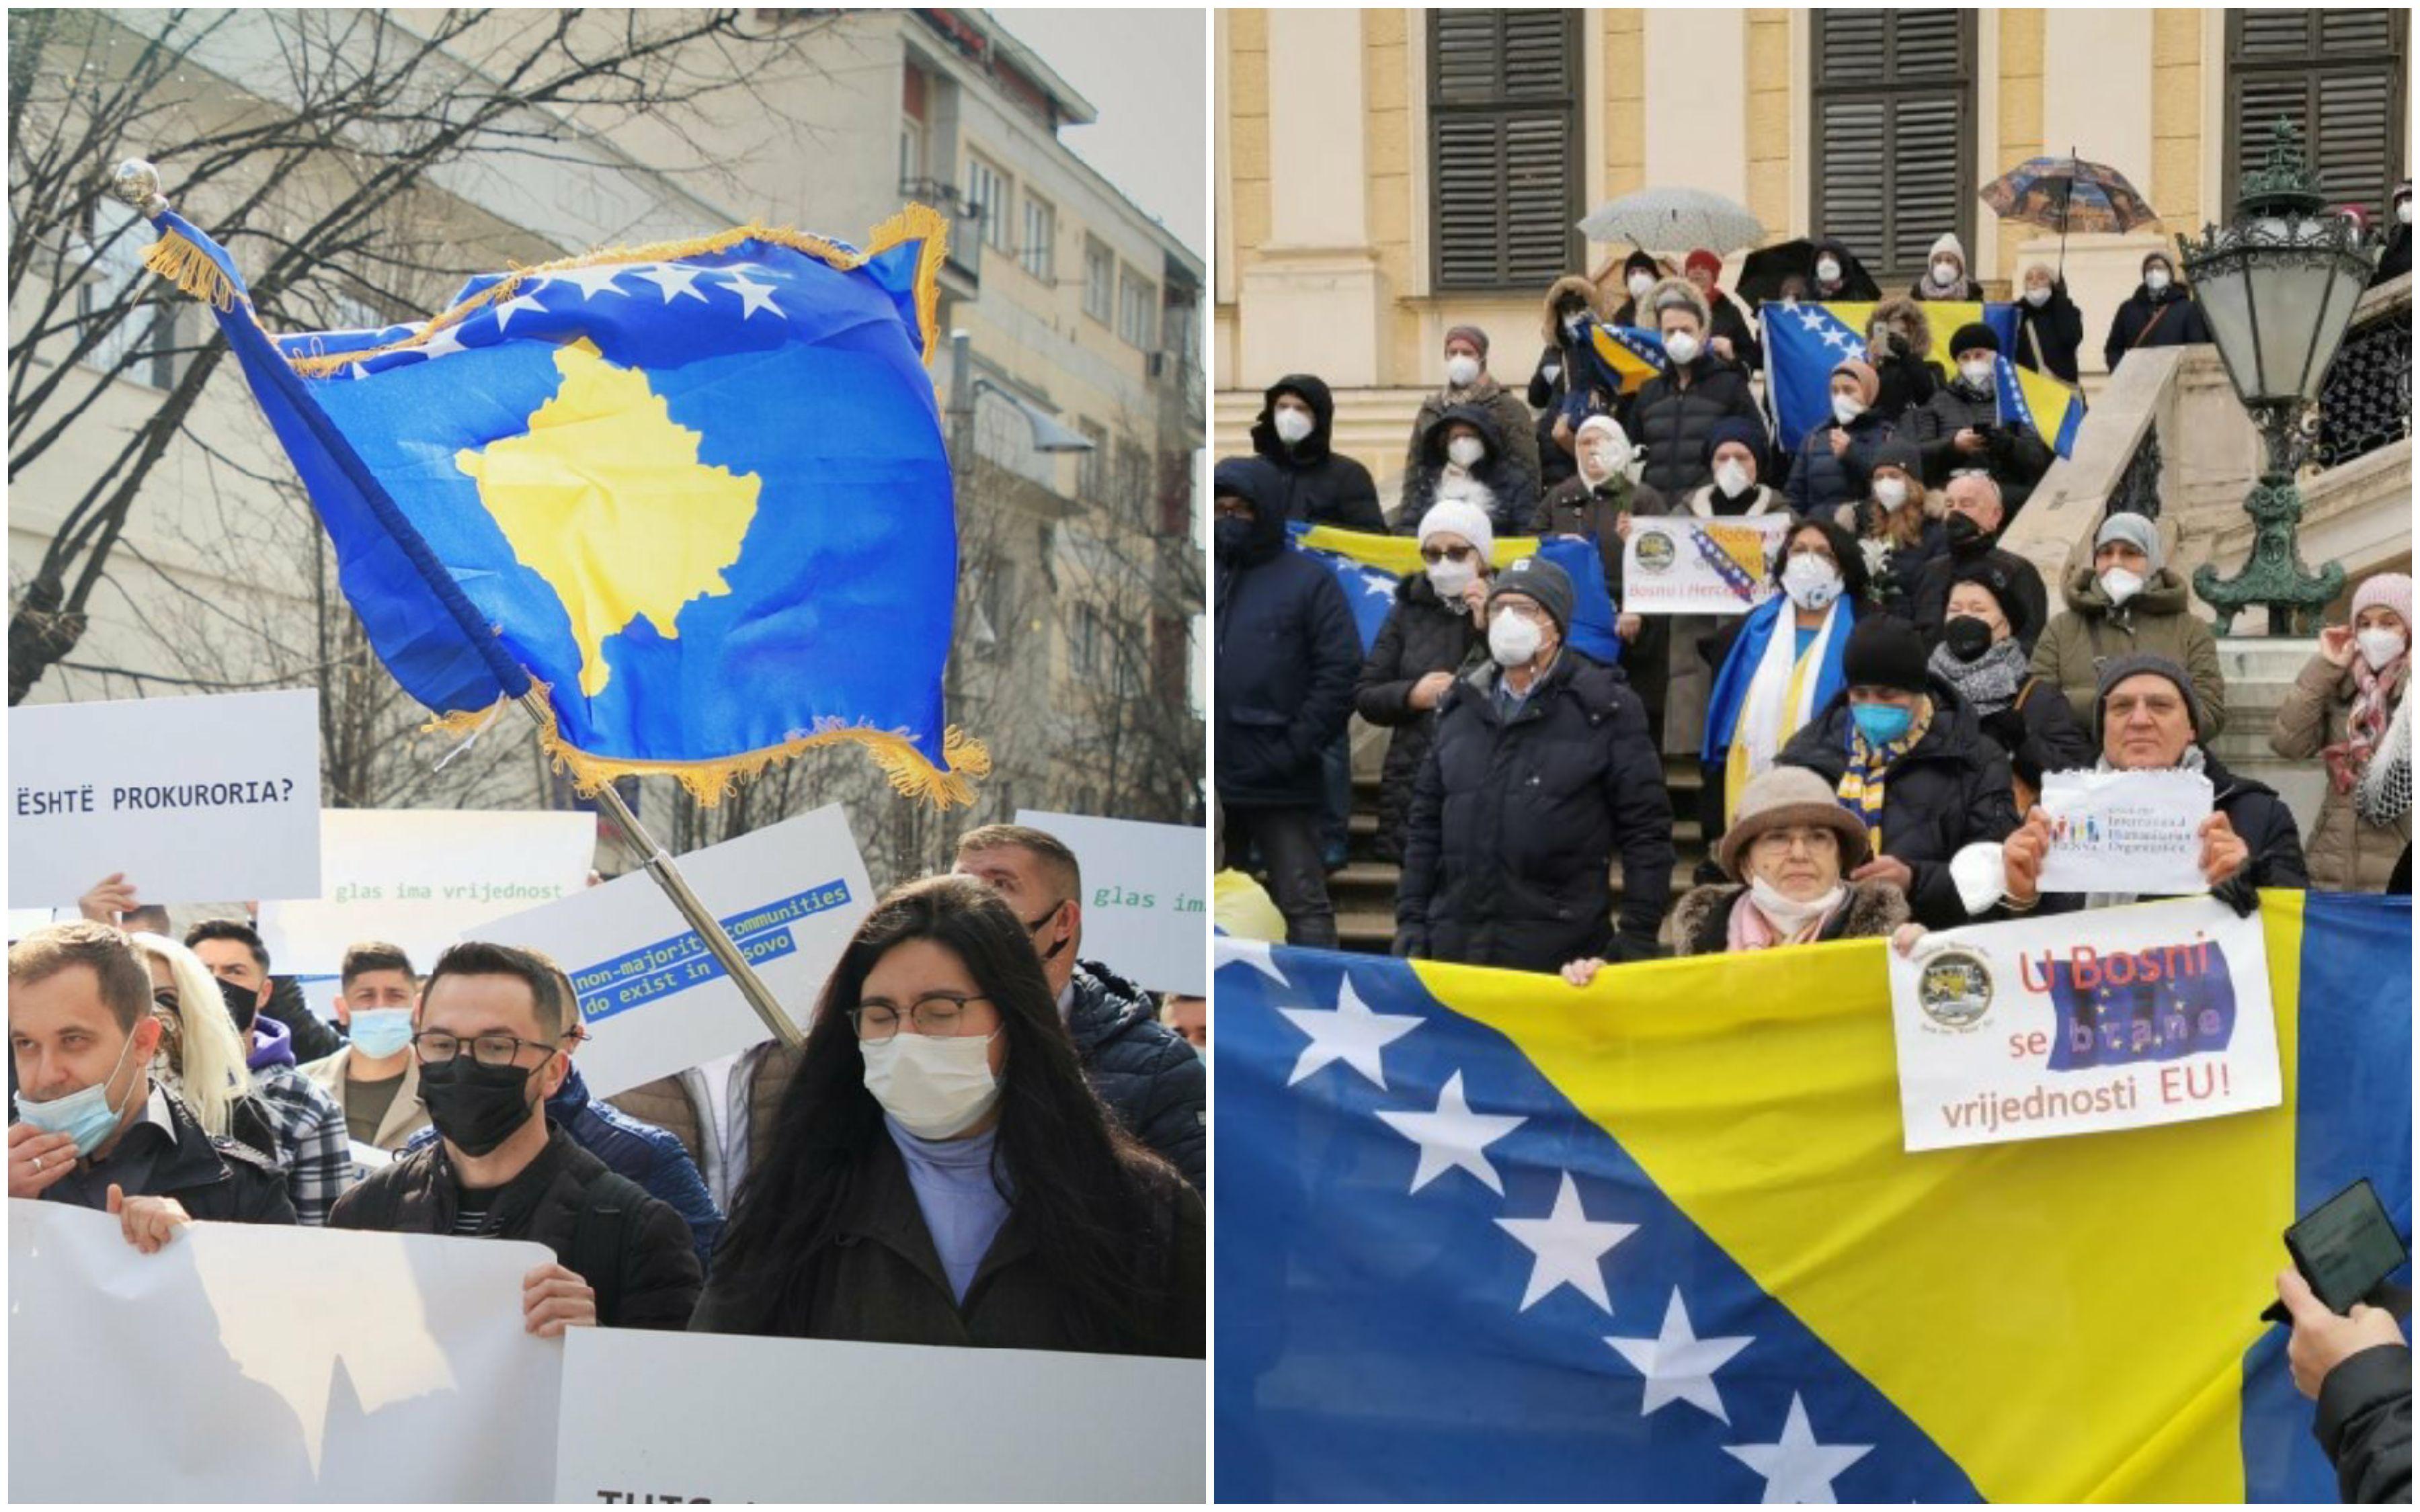 Organizacija "Naša inicijativa" organizivat će danas marš podrške suverenoj, jedinstvenoj i građanskoj Bosni i Hercegovini - Avaz